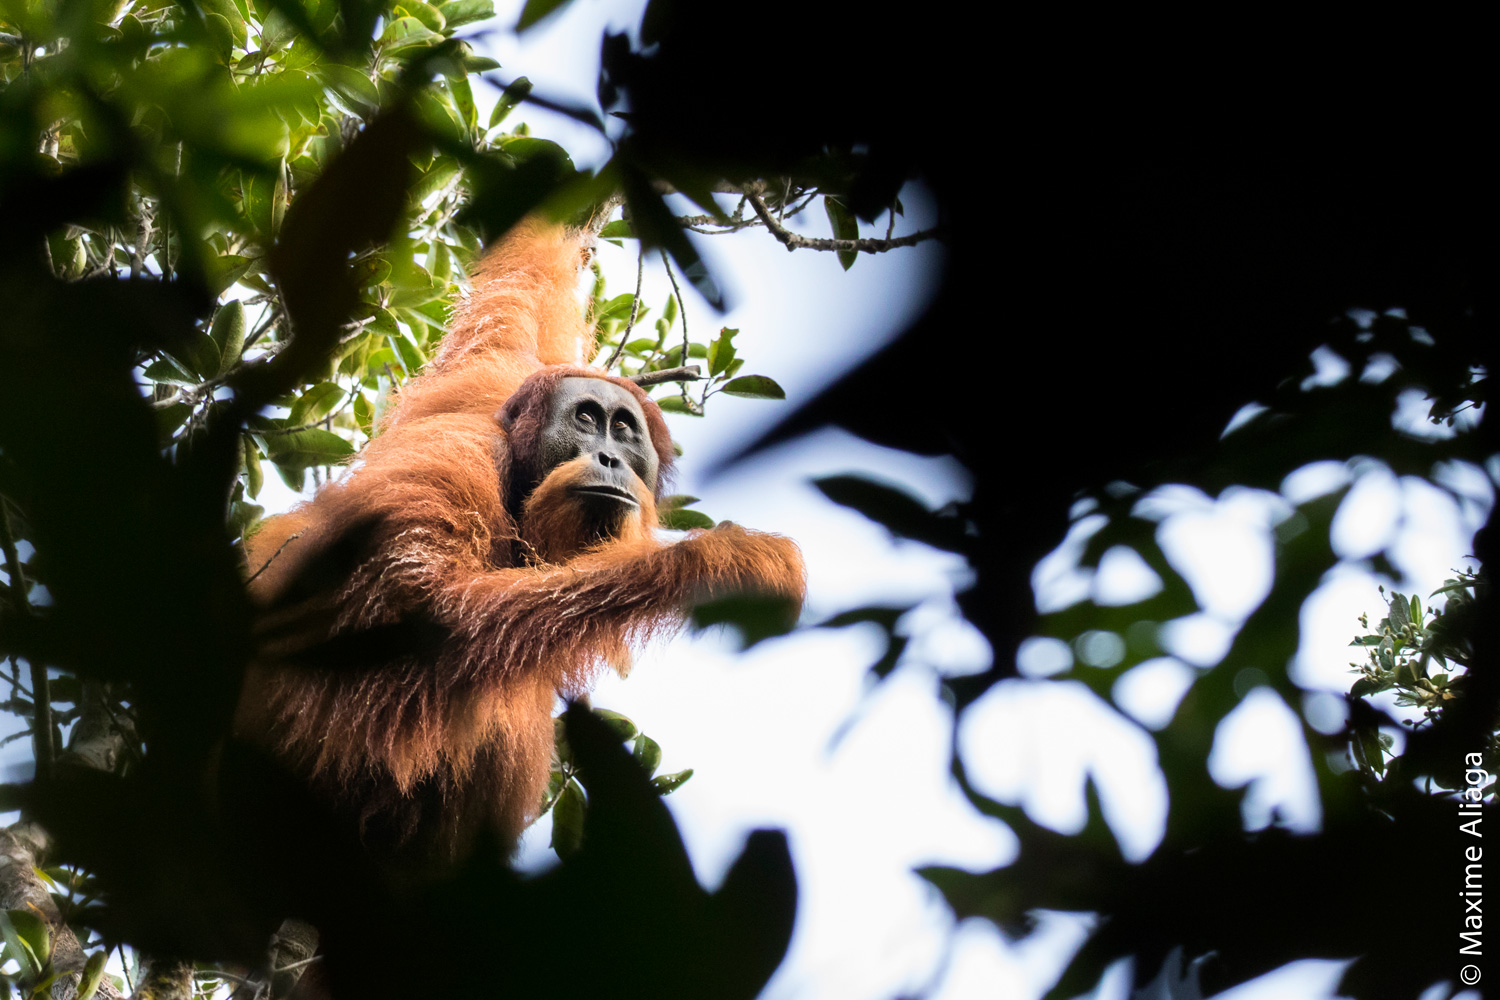 A Tapanuli orangutan (Pongo tapanuliensis) in Sumatra. Photo by Maxime Aliaga.